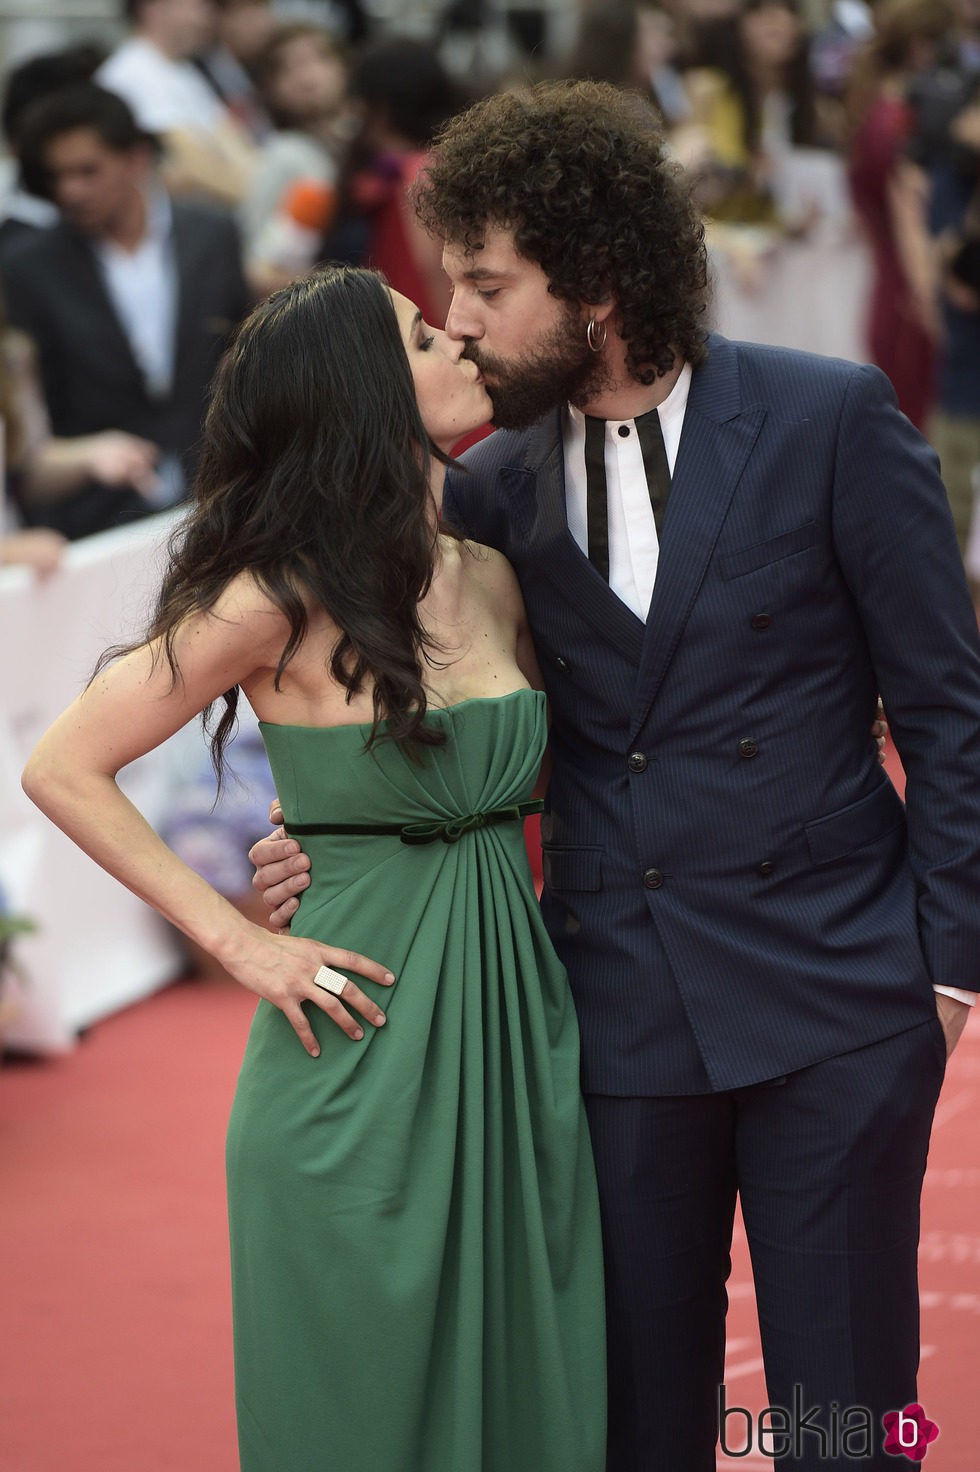 Nerea Barros y Juan Ibáñez se dan un beso en el Festival de Málaga 2015